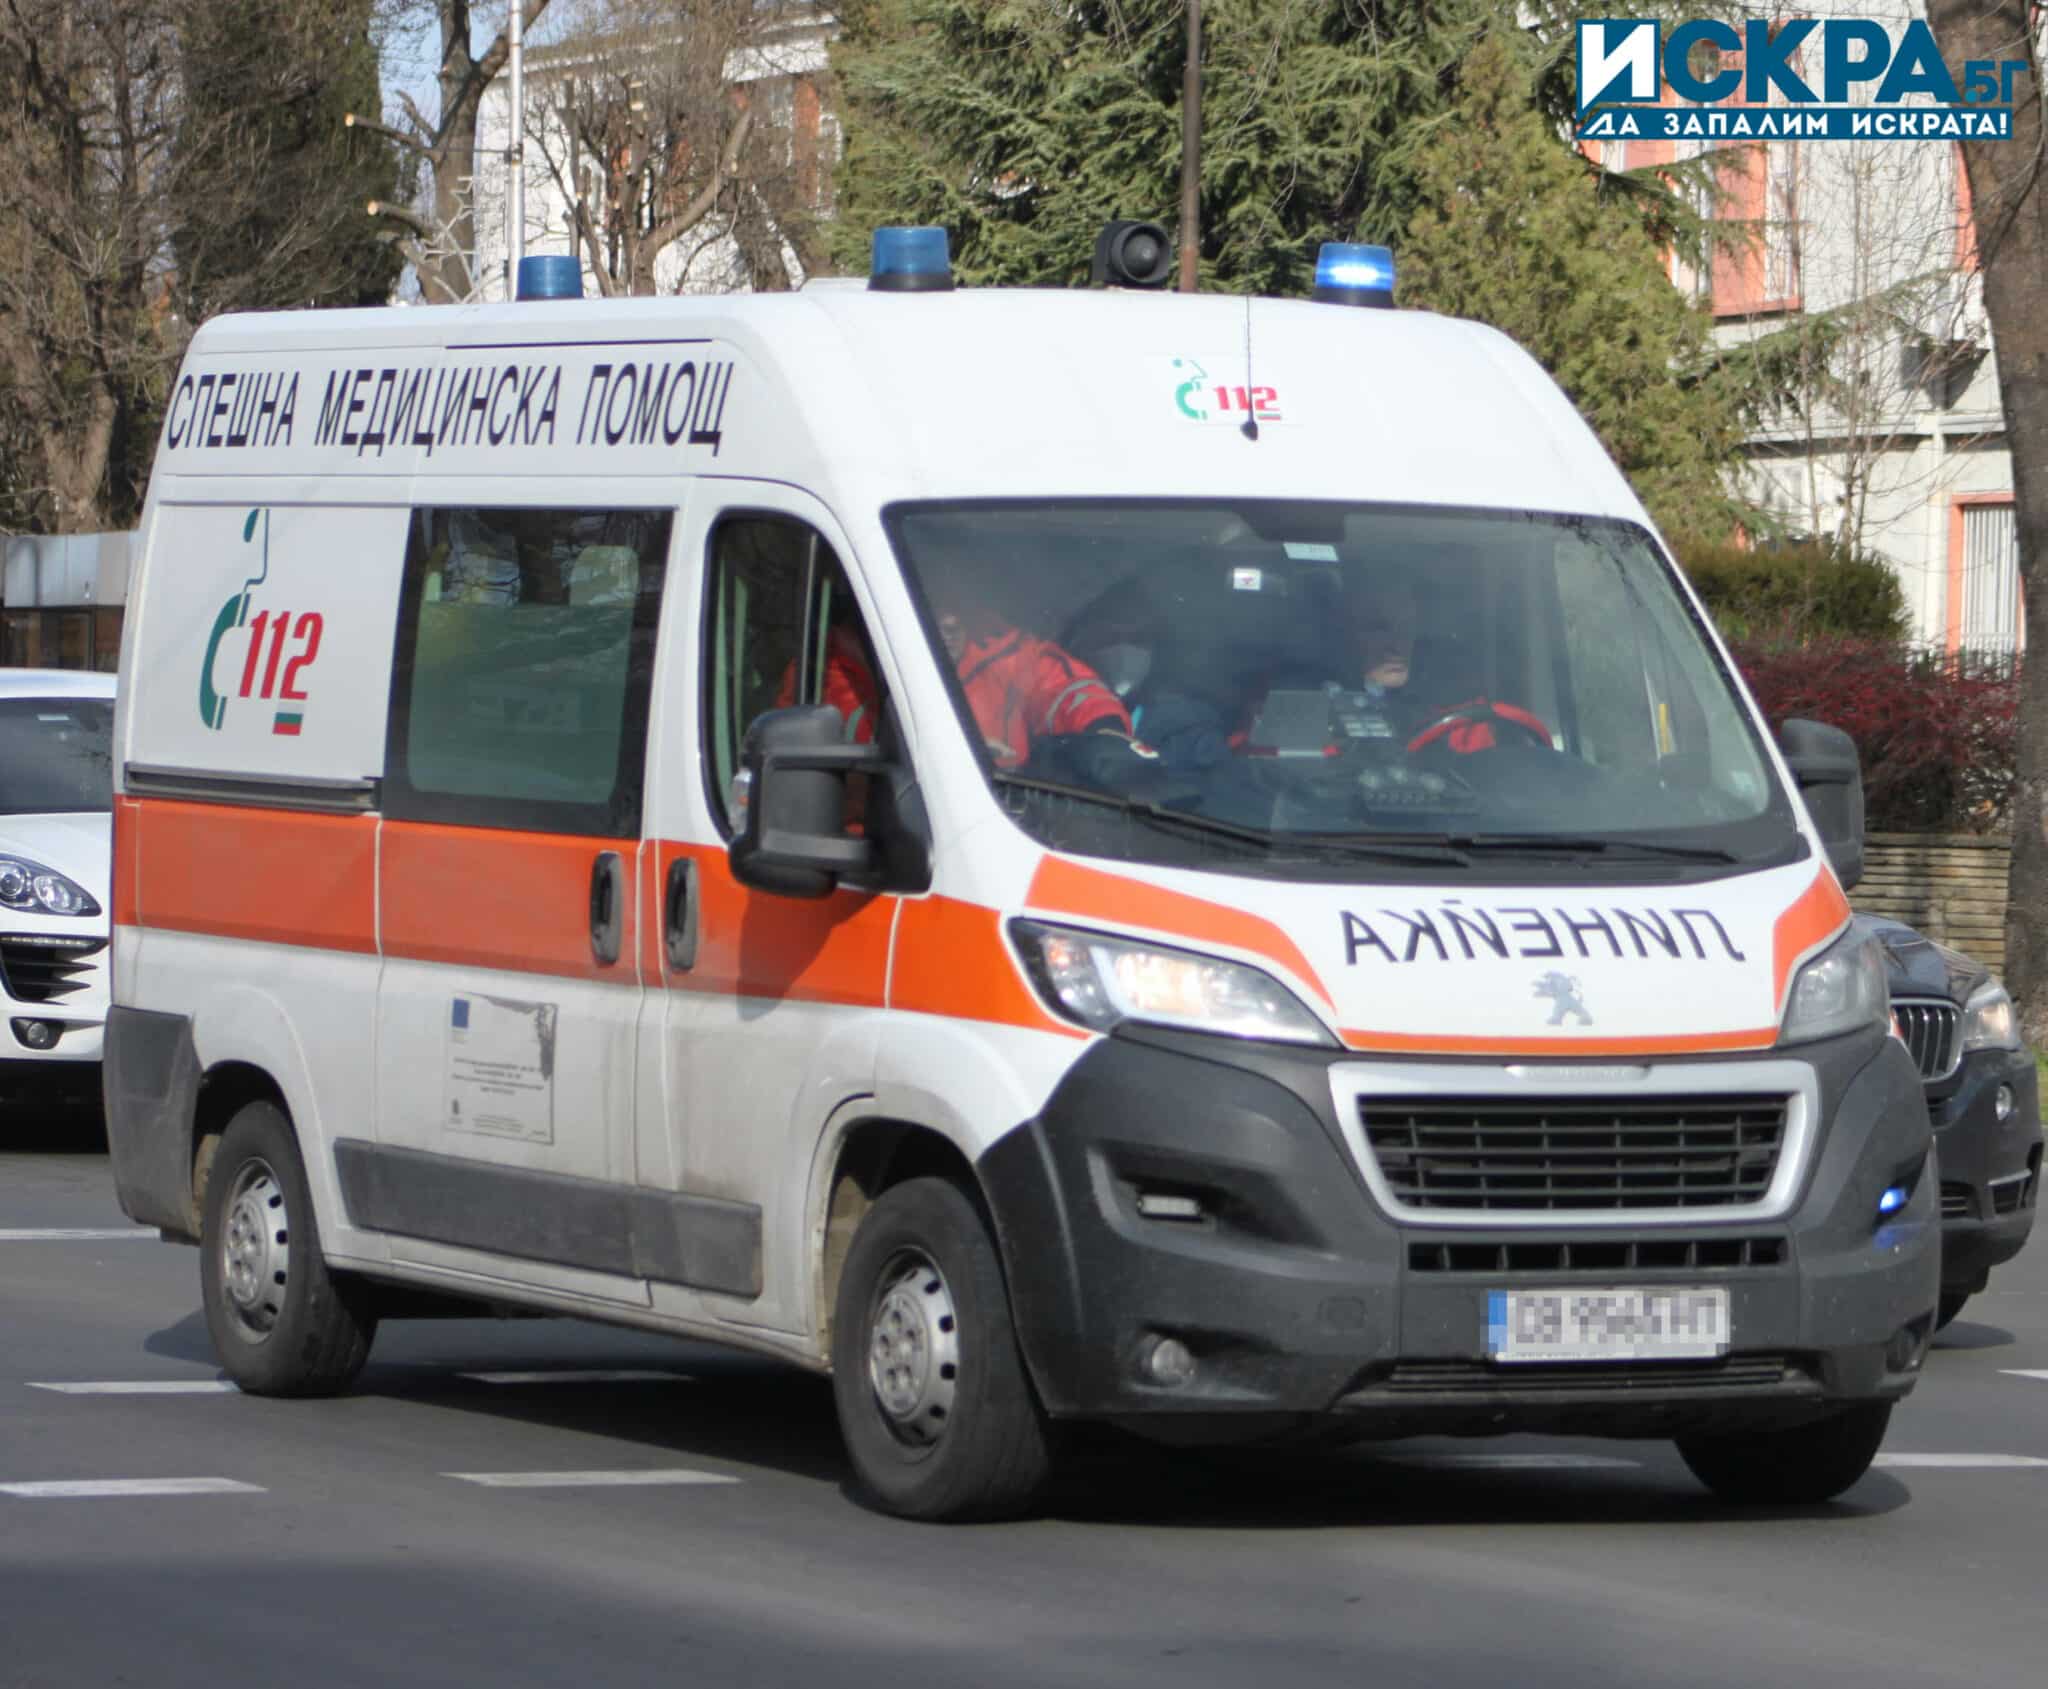 12-годипно момче от Полша е било блъснато от автомобил в